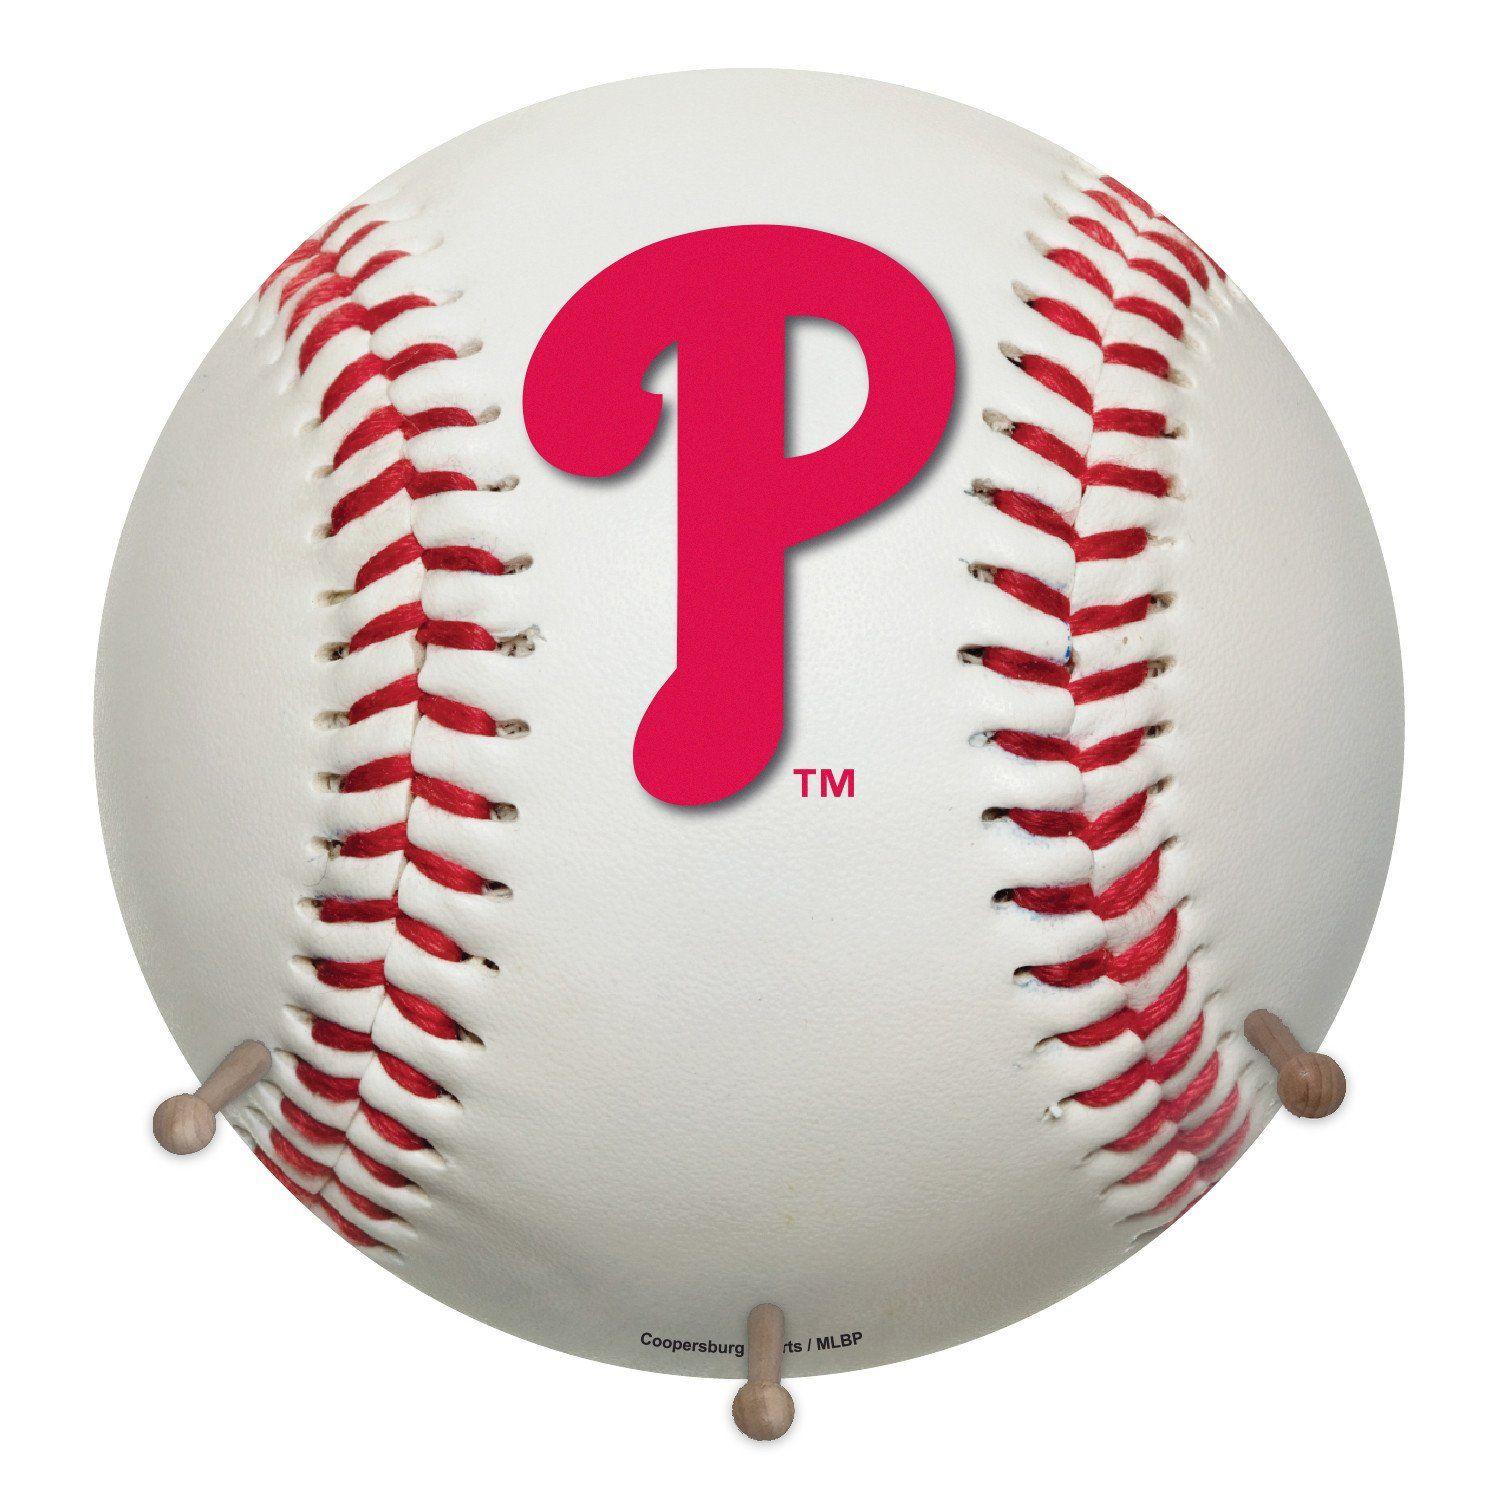 Phillies Baseball Logo - Philadelphia Phillies Baseball Coat Rack Team Logo | coopersburg